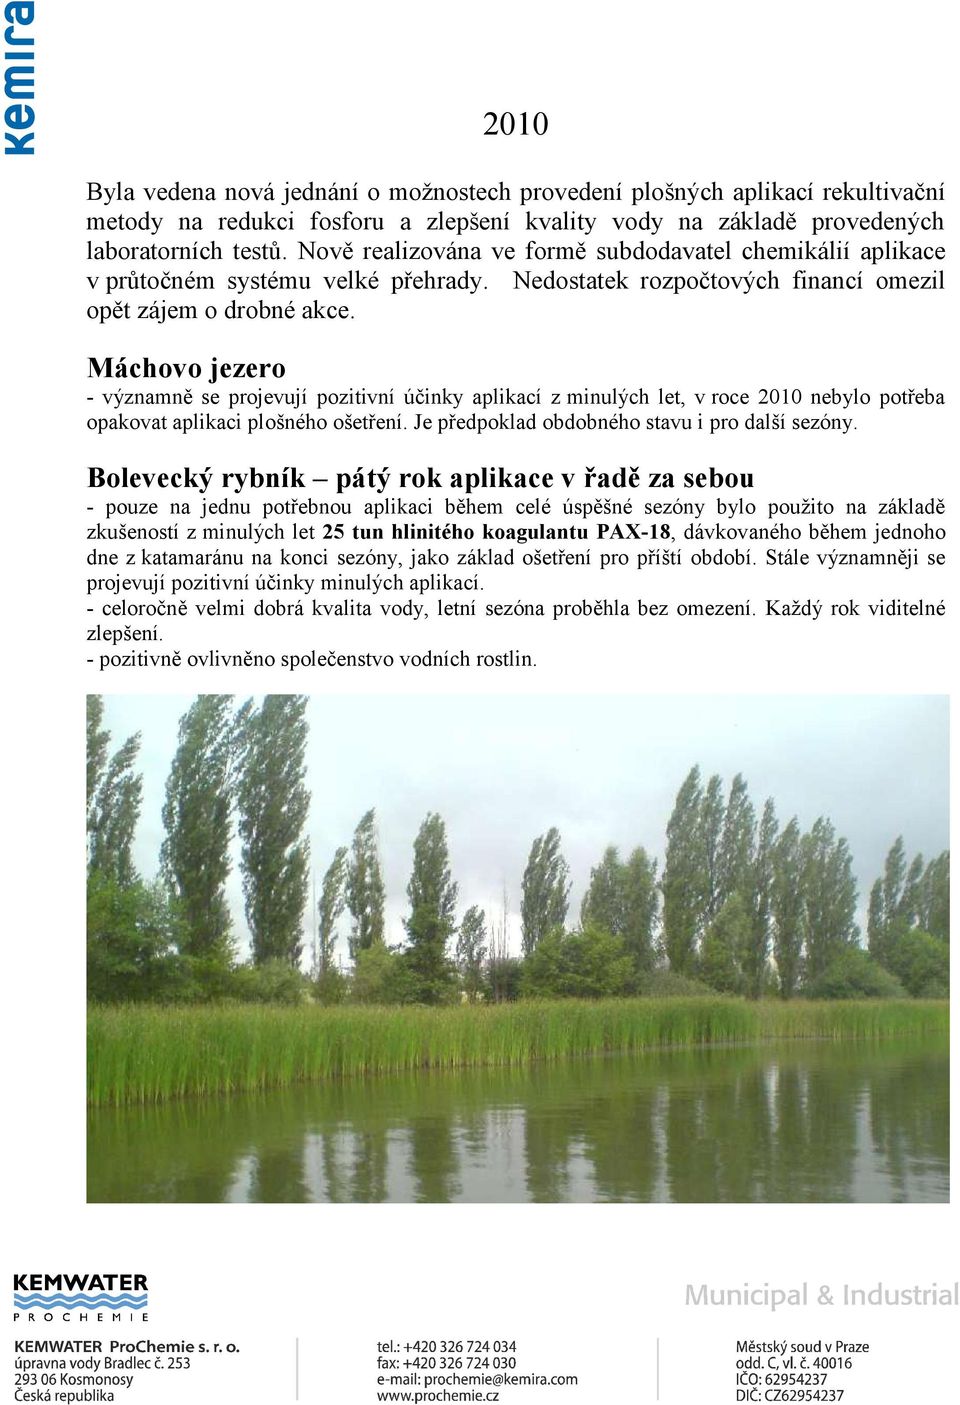 Máchovo jezero - významně se projevují pozitivní účinky aplikací z minulých let, v roce 2010 nebylo potřeba opakovat aplikaci plošného ošetření. Je předpoklad obdobného stavu i pro další sezóny.